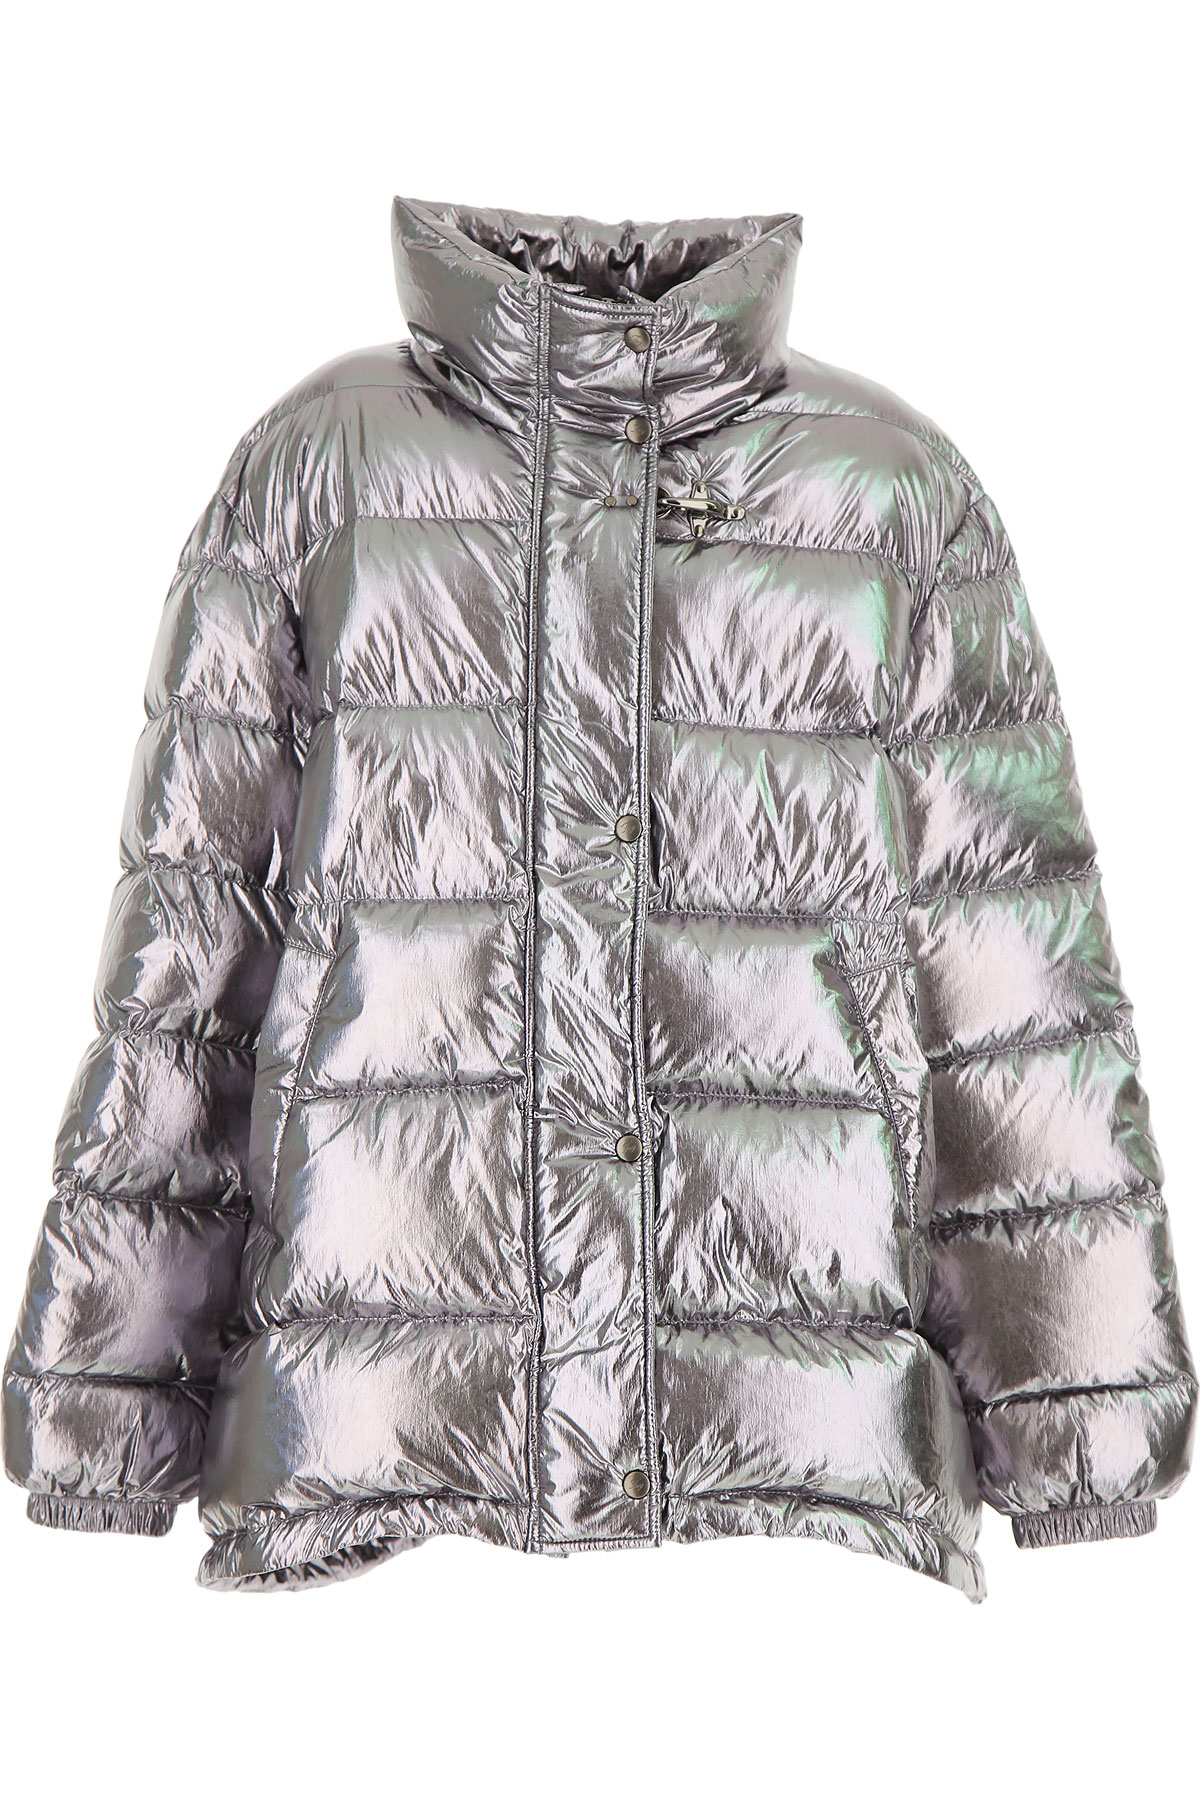 Fay Kinder Daunen Jacke für Mädchen, Soft Shell Ski Jacken Günstig im Sale, Silber, Polyamid, 2017, 12Y 14Y